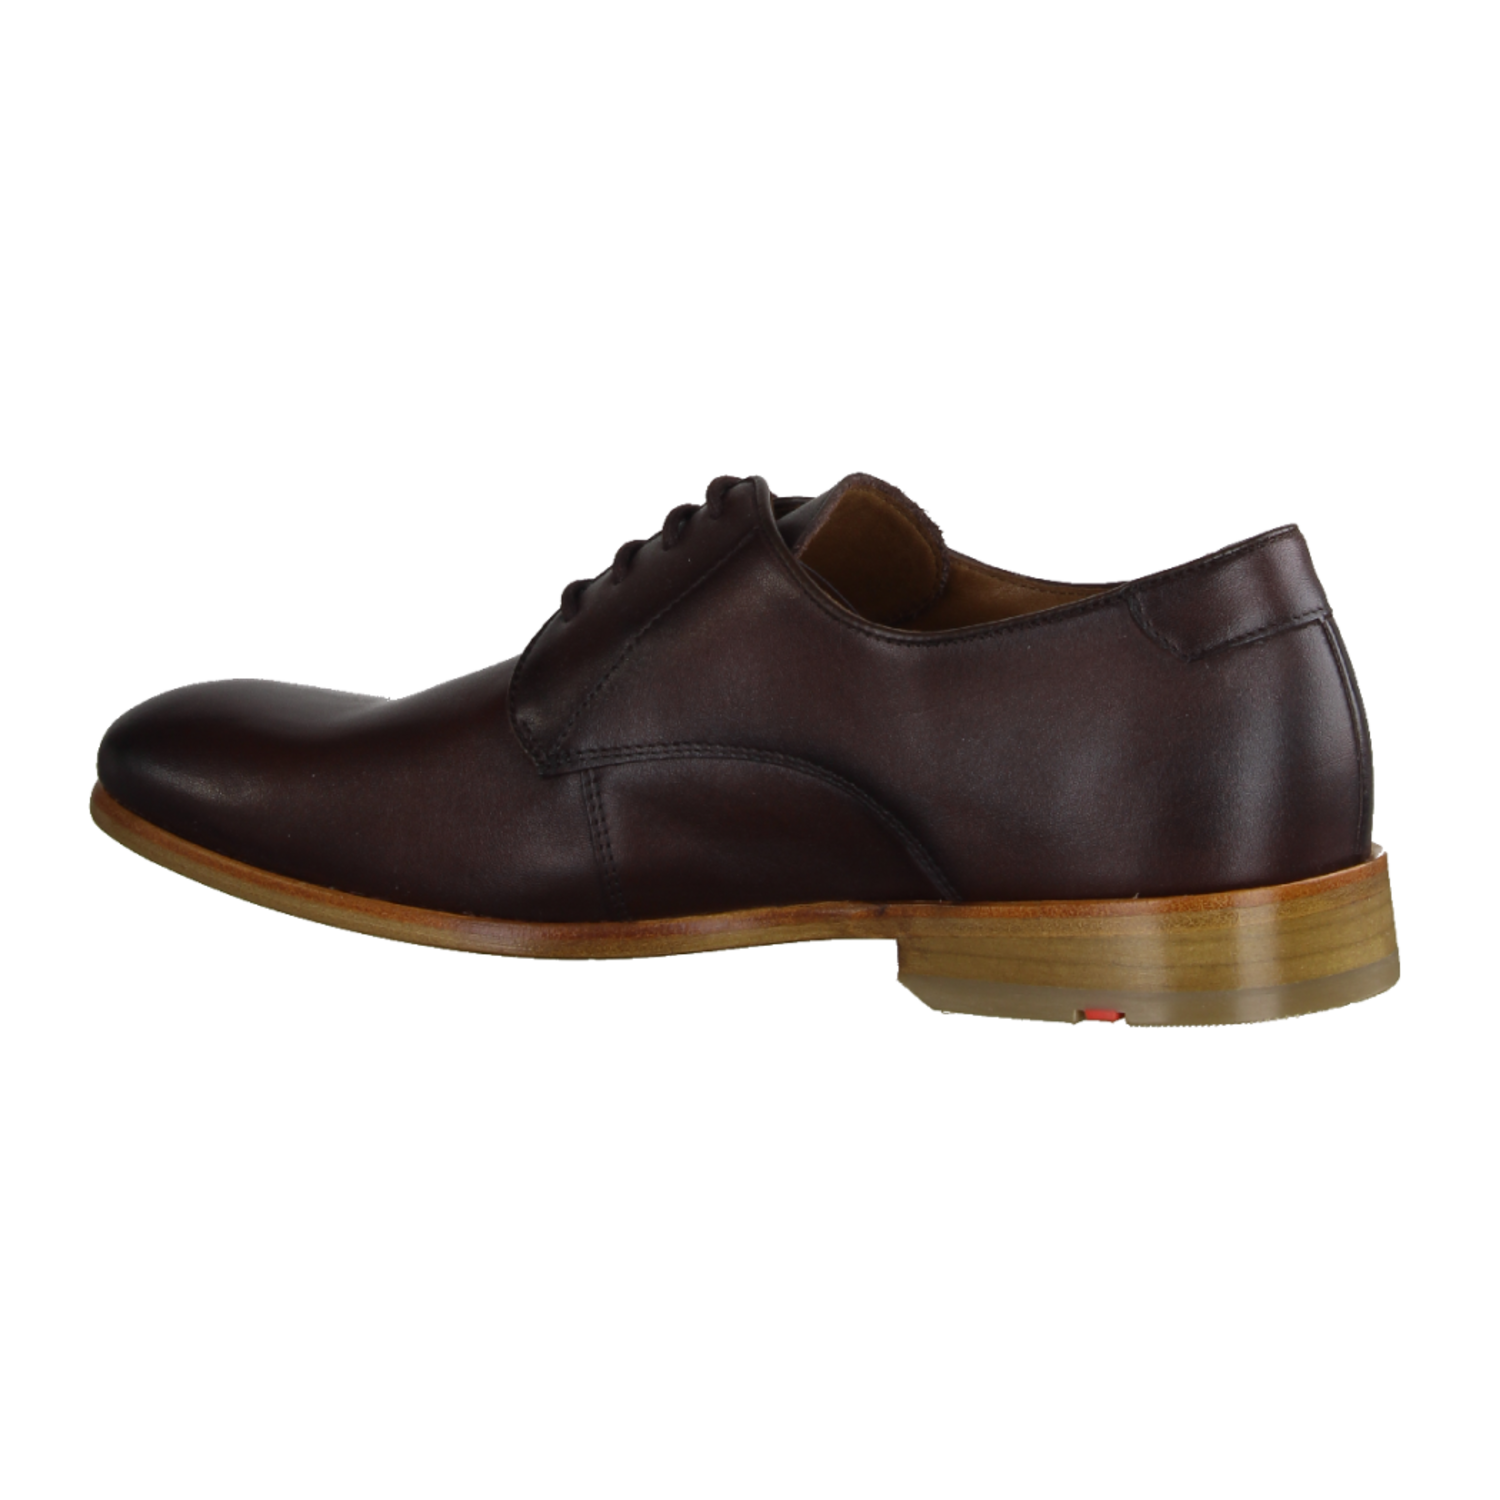 Daniel Hechter men´s leather sneaker - cognac brown